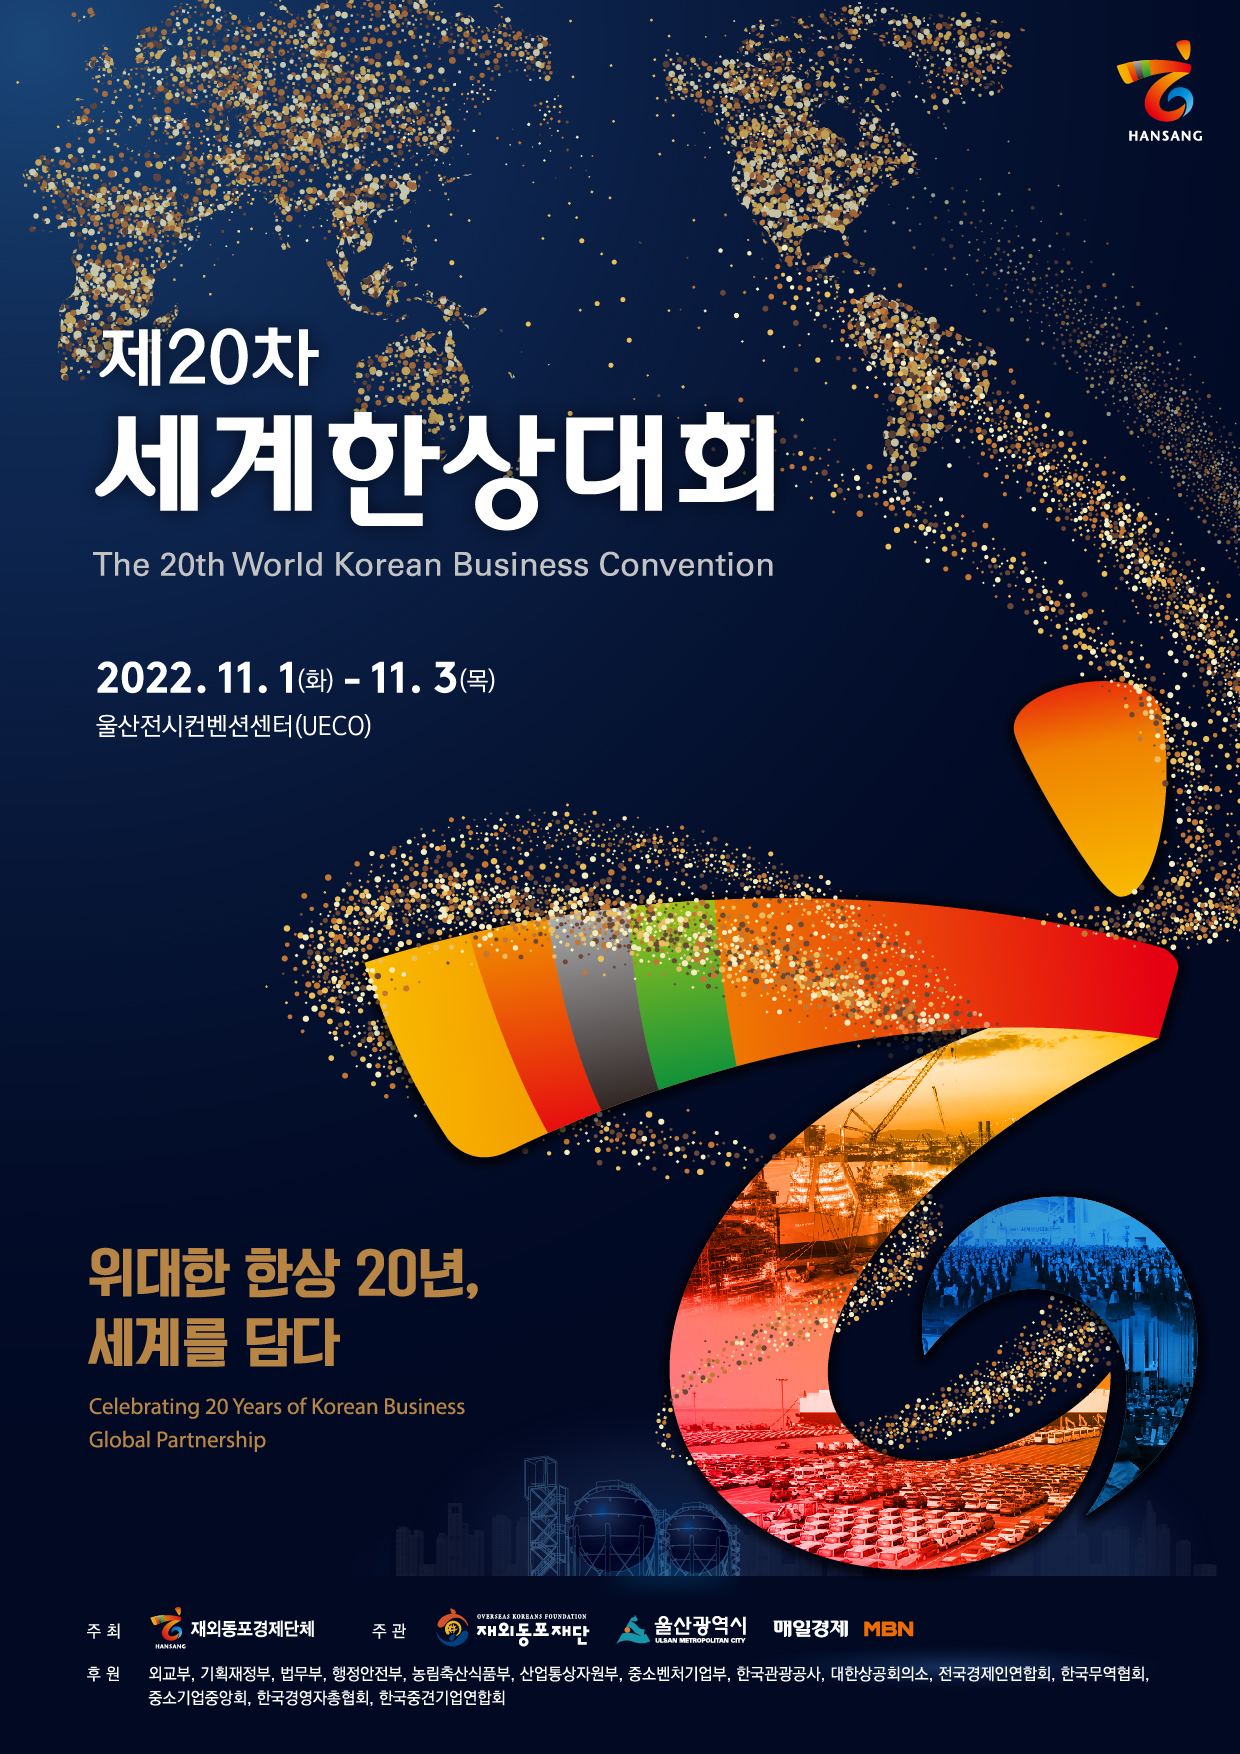 제 20차 세계한상대회  the 20th world korean business convention